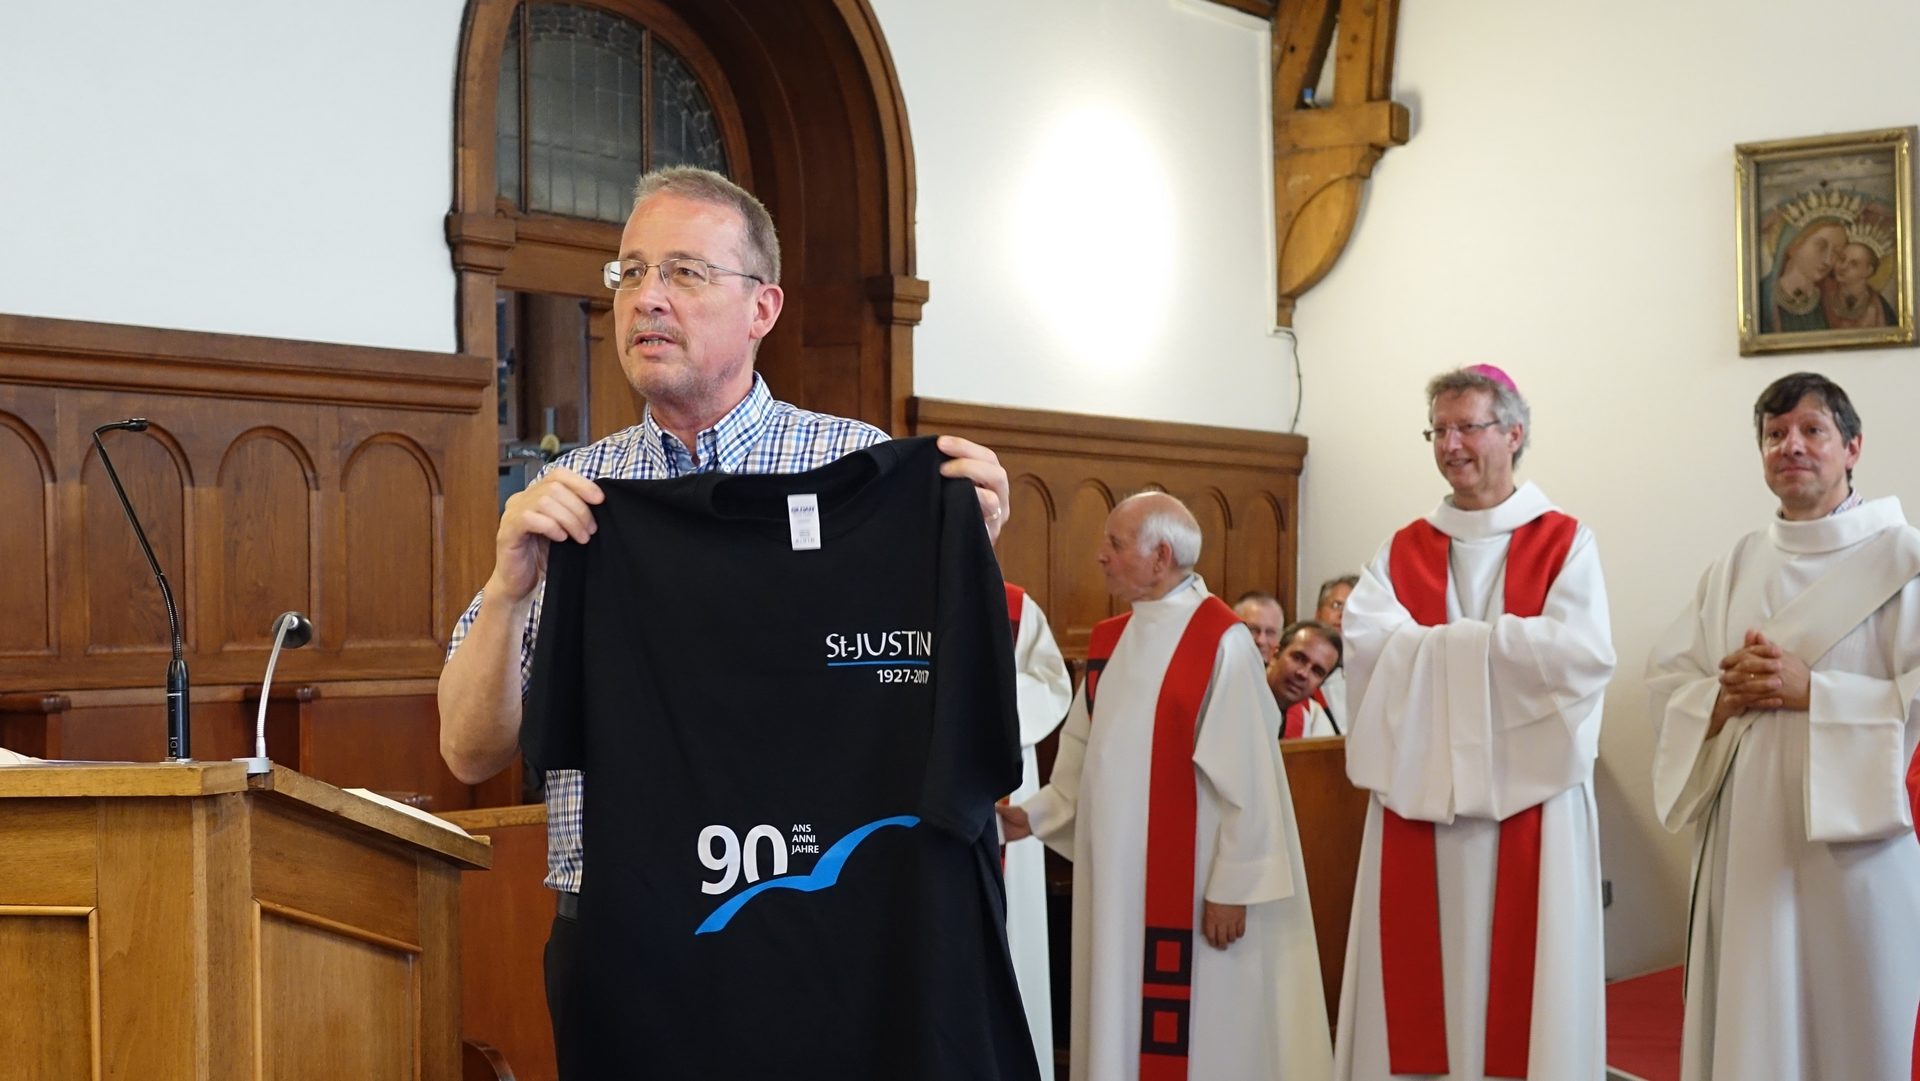 Lorenzo Laini, directeur de la Cité St-Justin de Fribourg, présent le T-shirt du 90e anniversaire de la fondation de l'Oeuvre St-Justin (photo Maurice Page) 